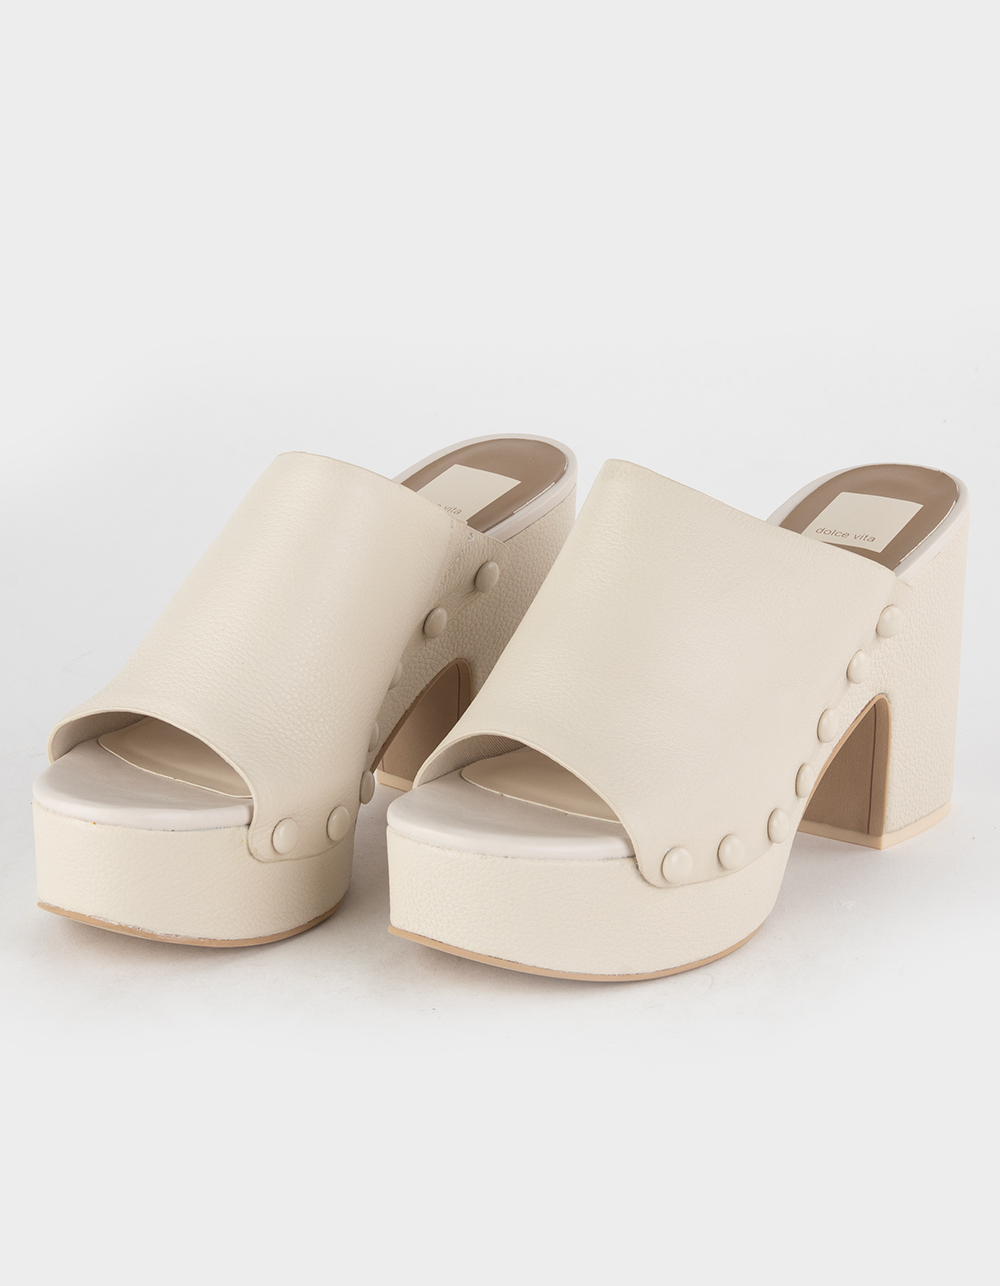 DOLCE VITA Emol Womens Platform Sandals - IVORY | Tillys